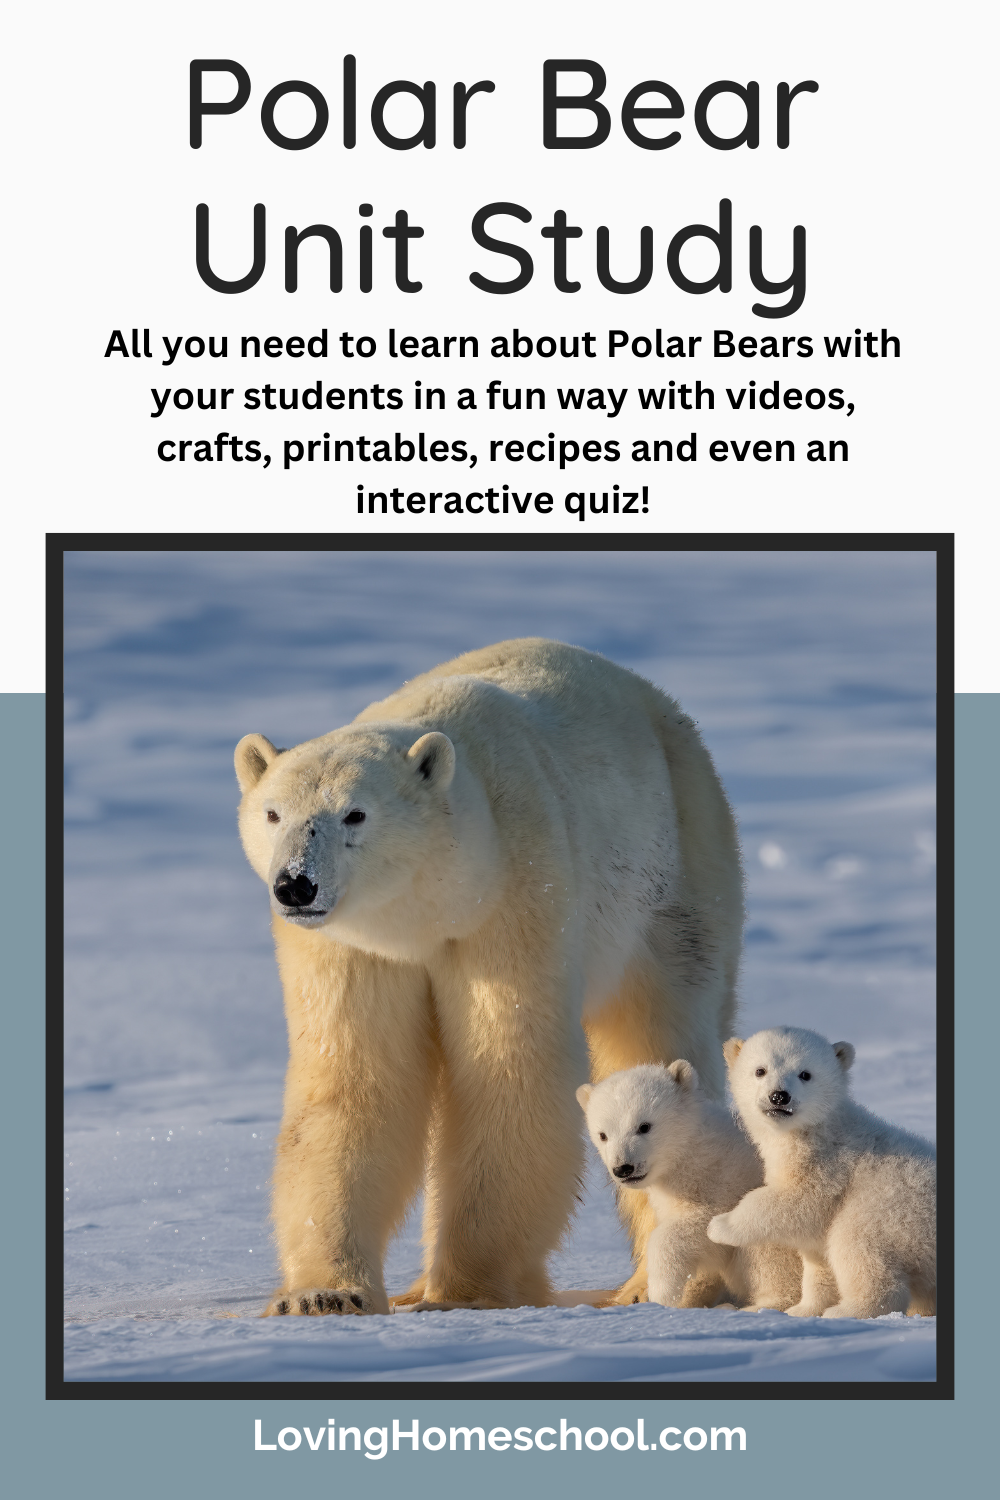 Polar Bear Unit Study Pinterest Pin